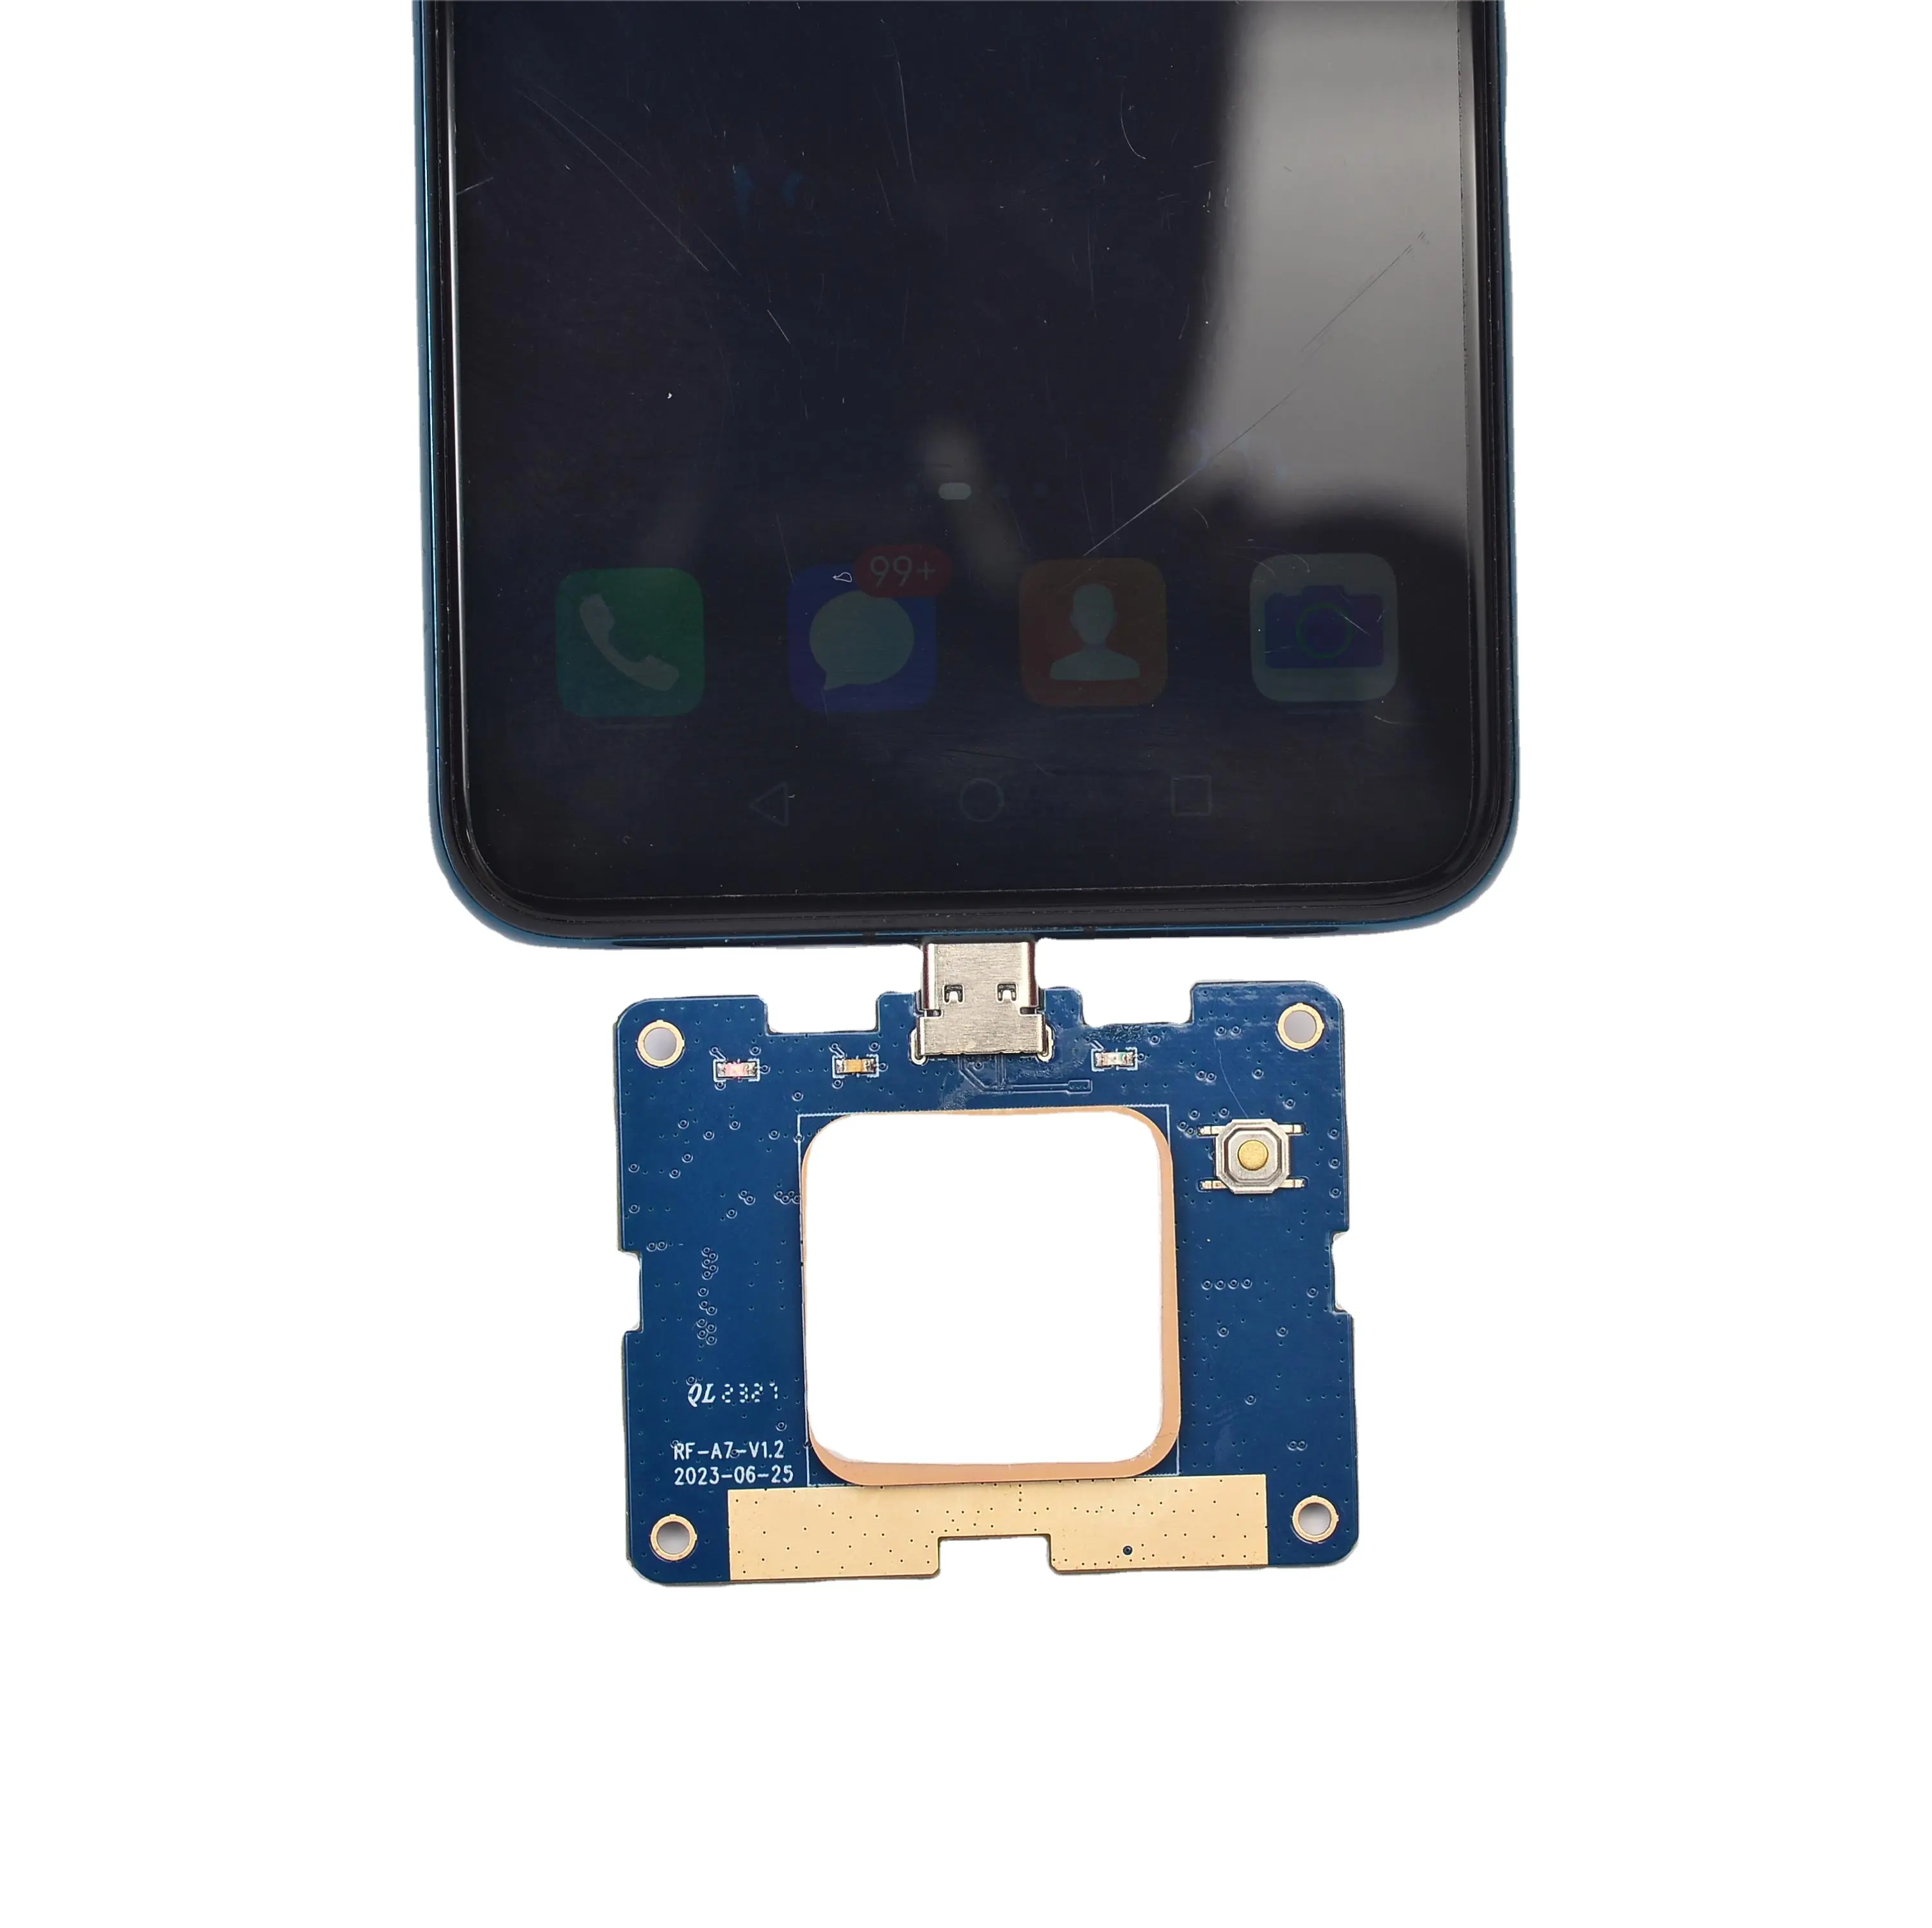 Gratis pengiriman Mini Prorable UHF RFID Card Reader OTG Smart Phone untuk antarmuka tipe-c dengan SDK